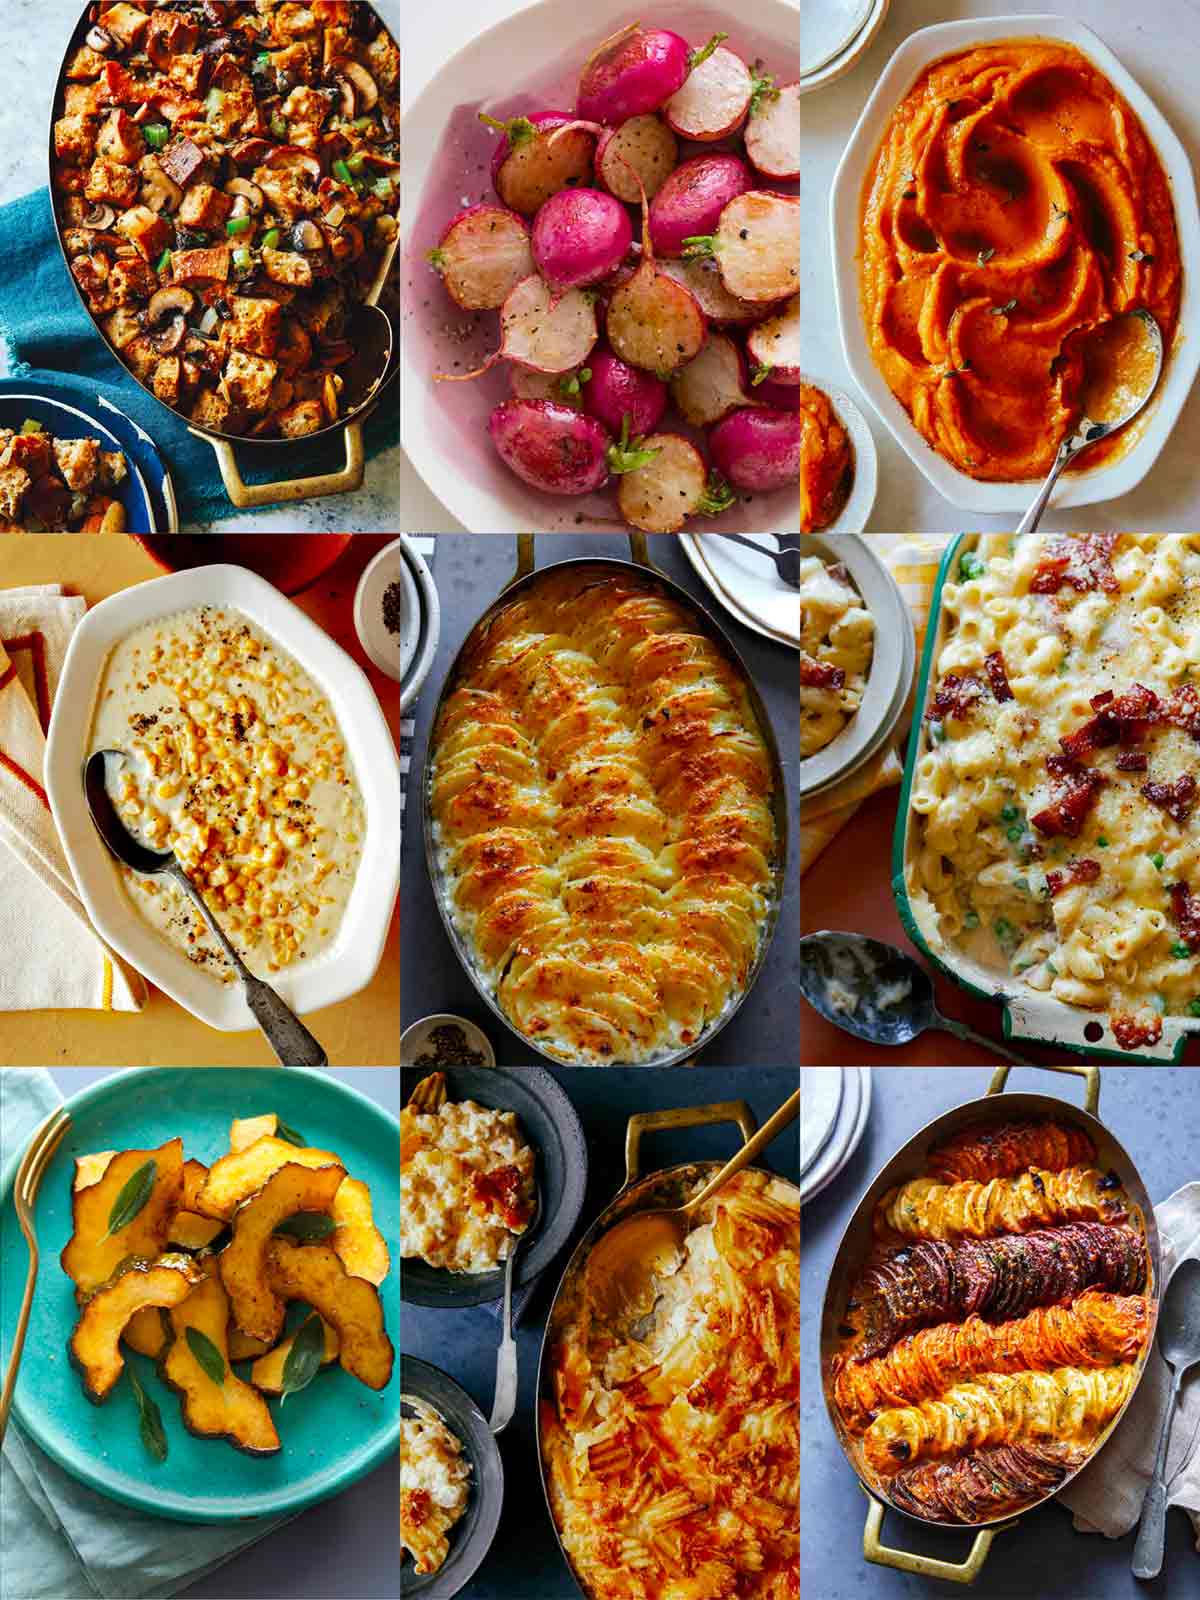 Thanksgiving Dinner Menu Ideas (over 100 recipes!)